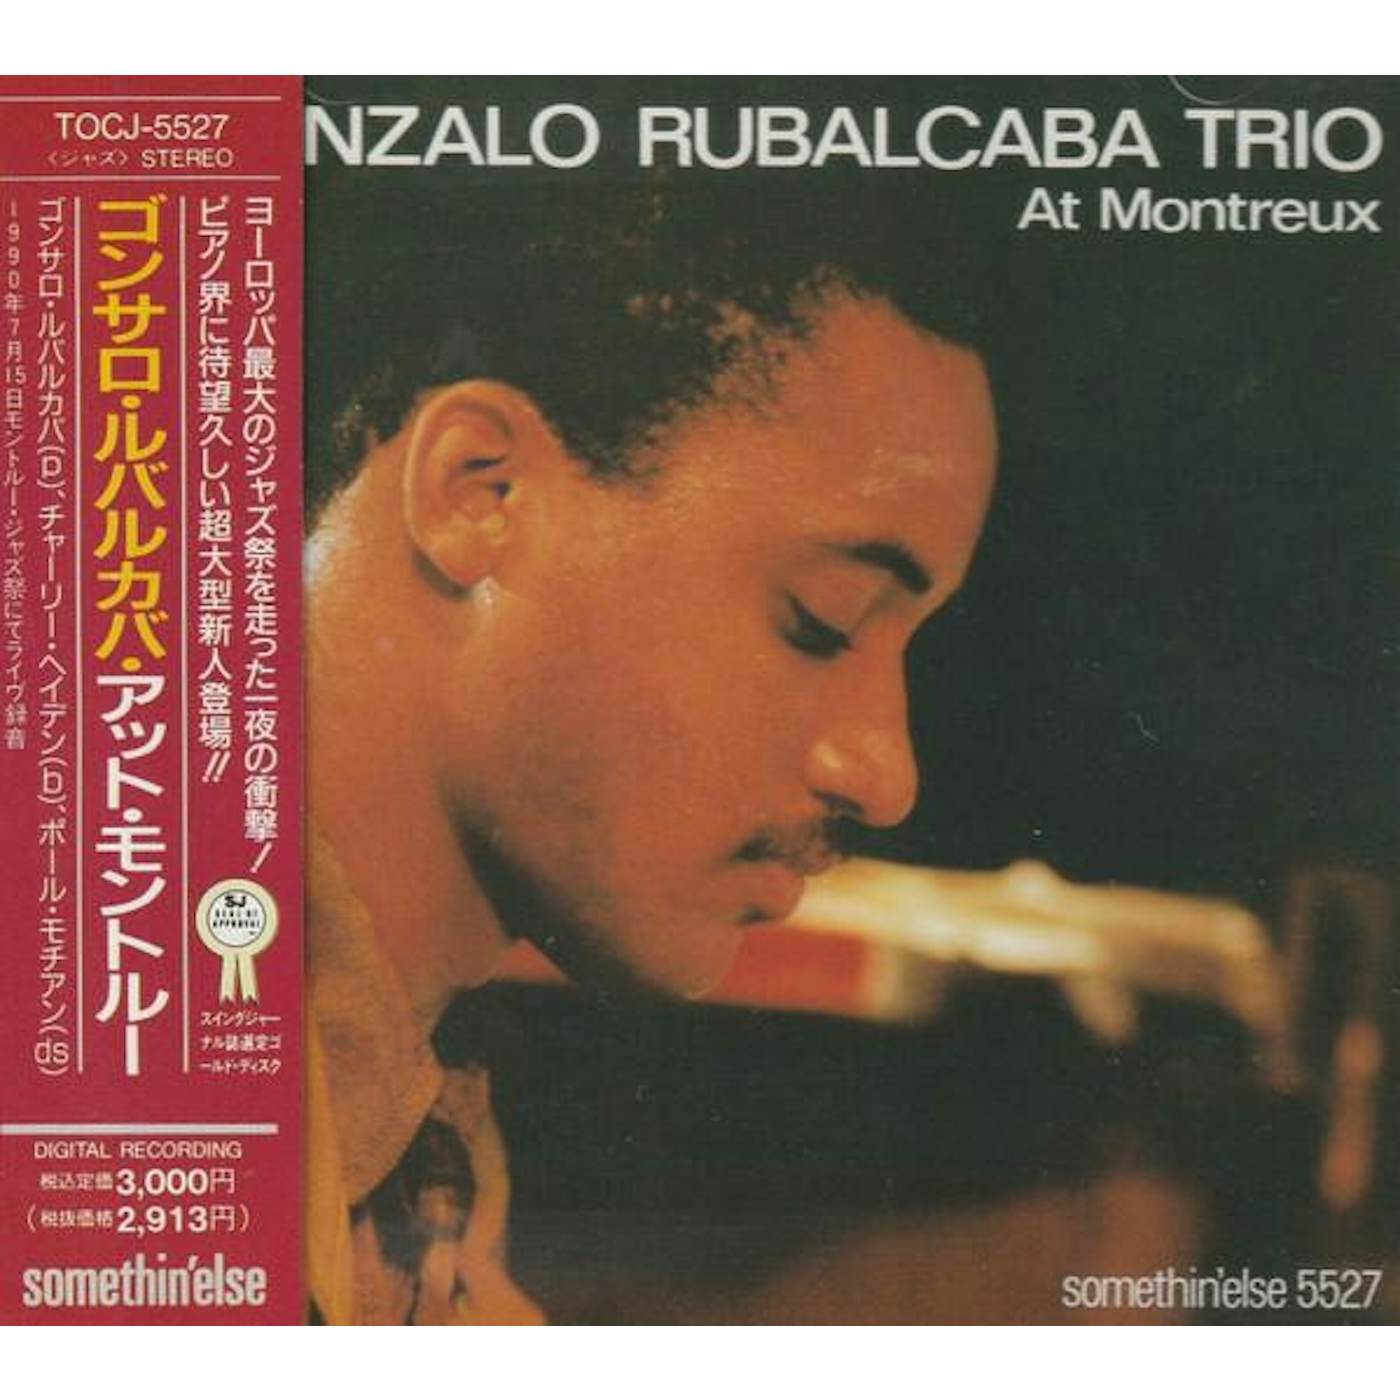 GONZALO RUBALCABA TRIO AT MONTREUX CD